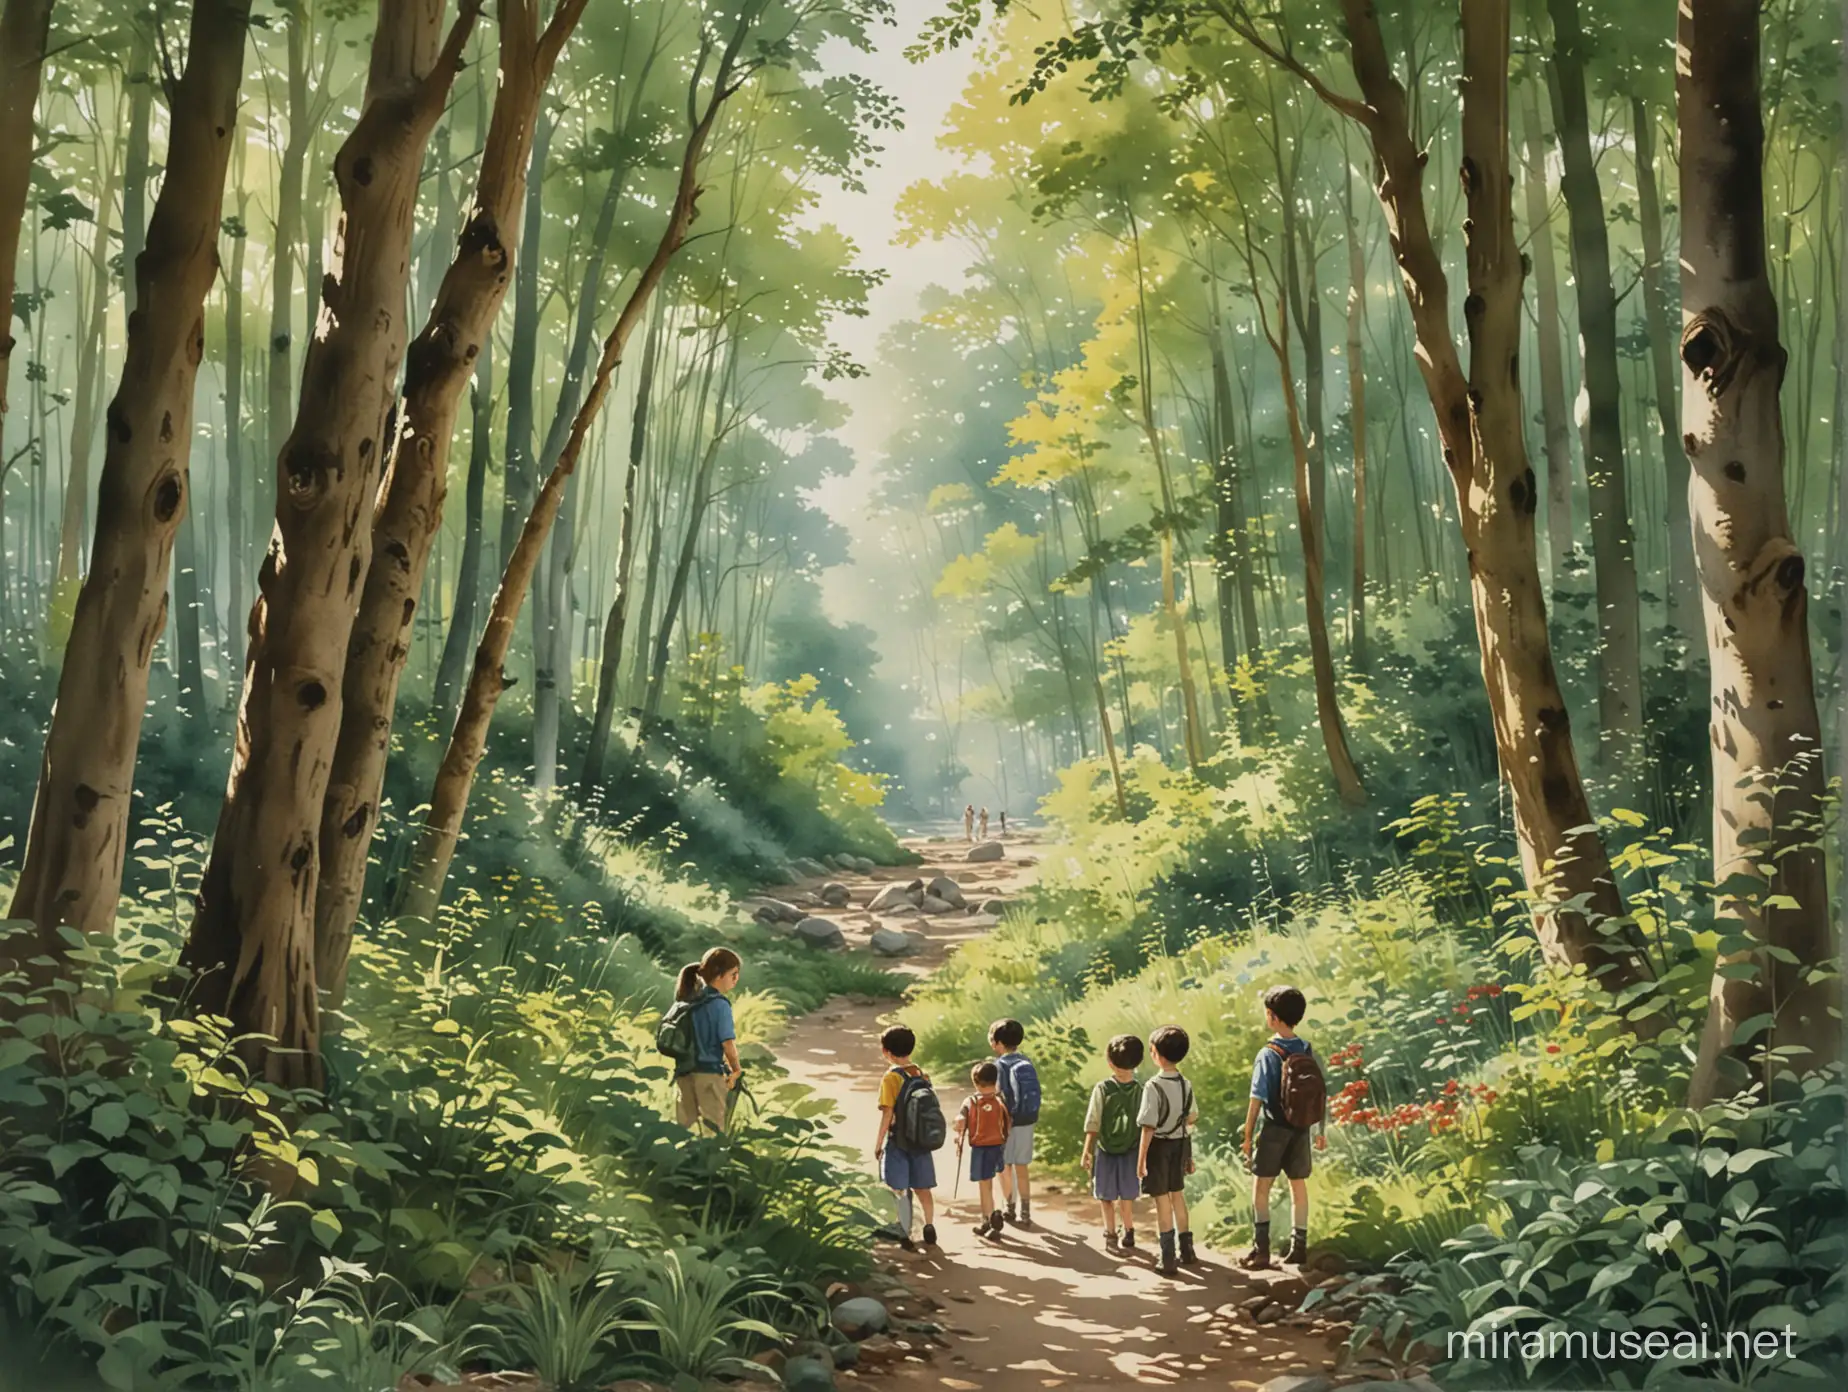 Children Exploring Nature Renaissance Sunlit Forest Adventure